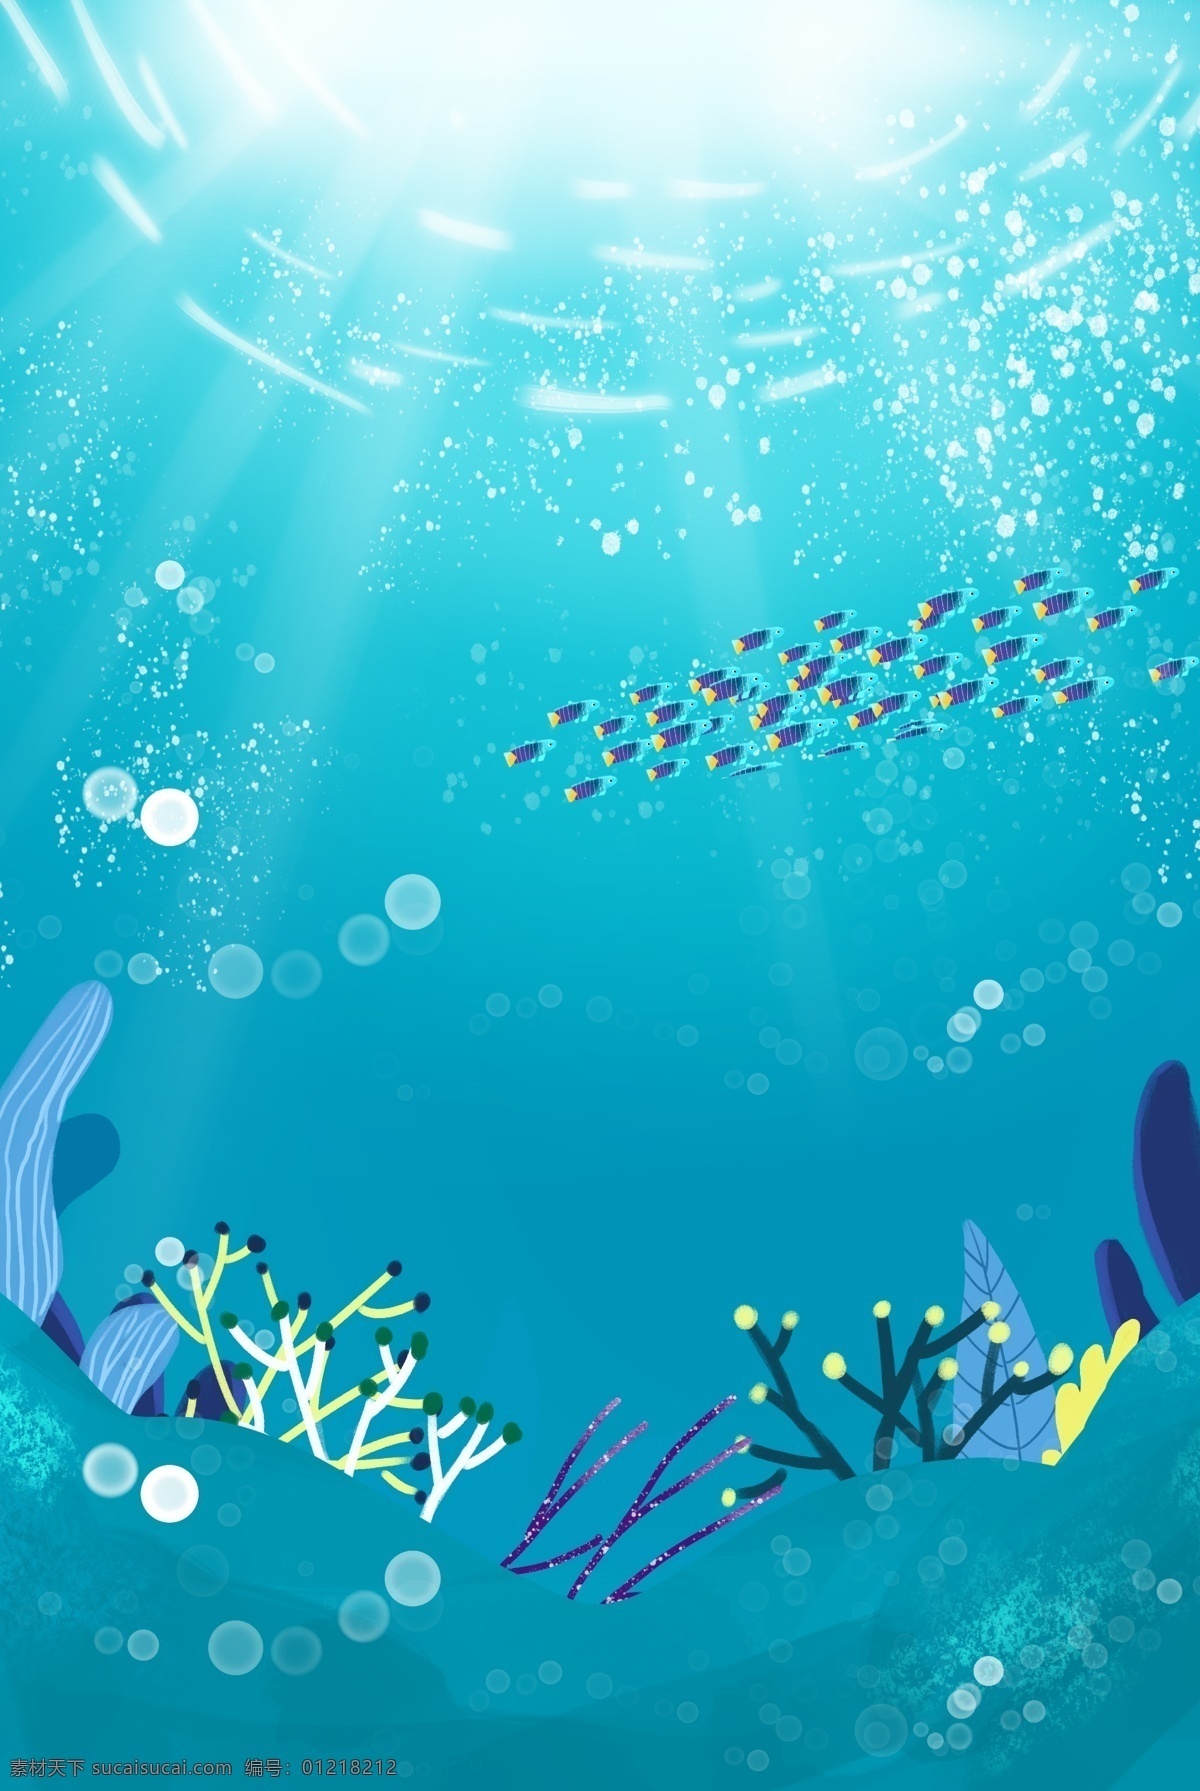 海洋世界 珊瑚 鱼群 分层 banner 蓝色 手绘 夏天 海底 鱼 海草 气泡 创意合成